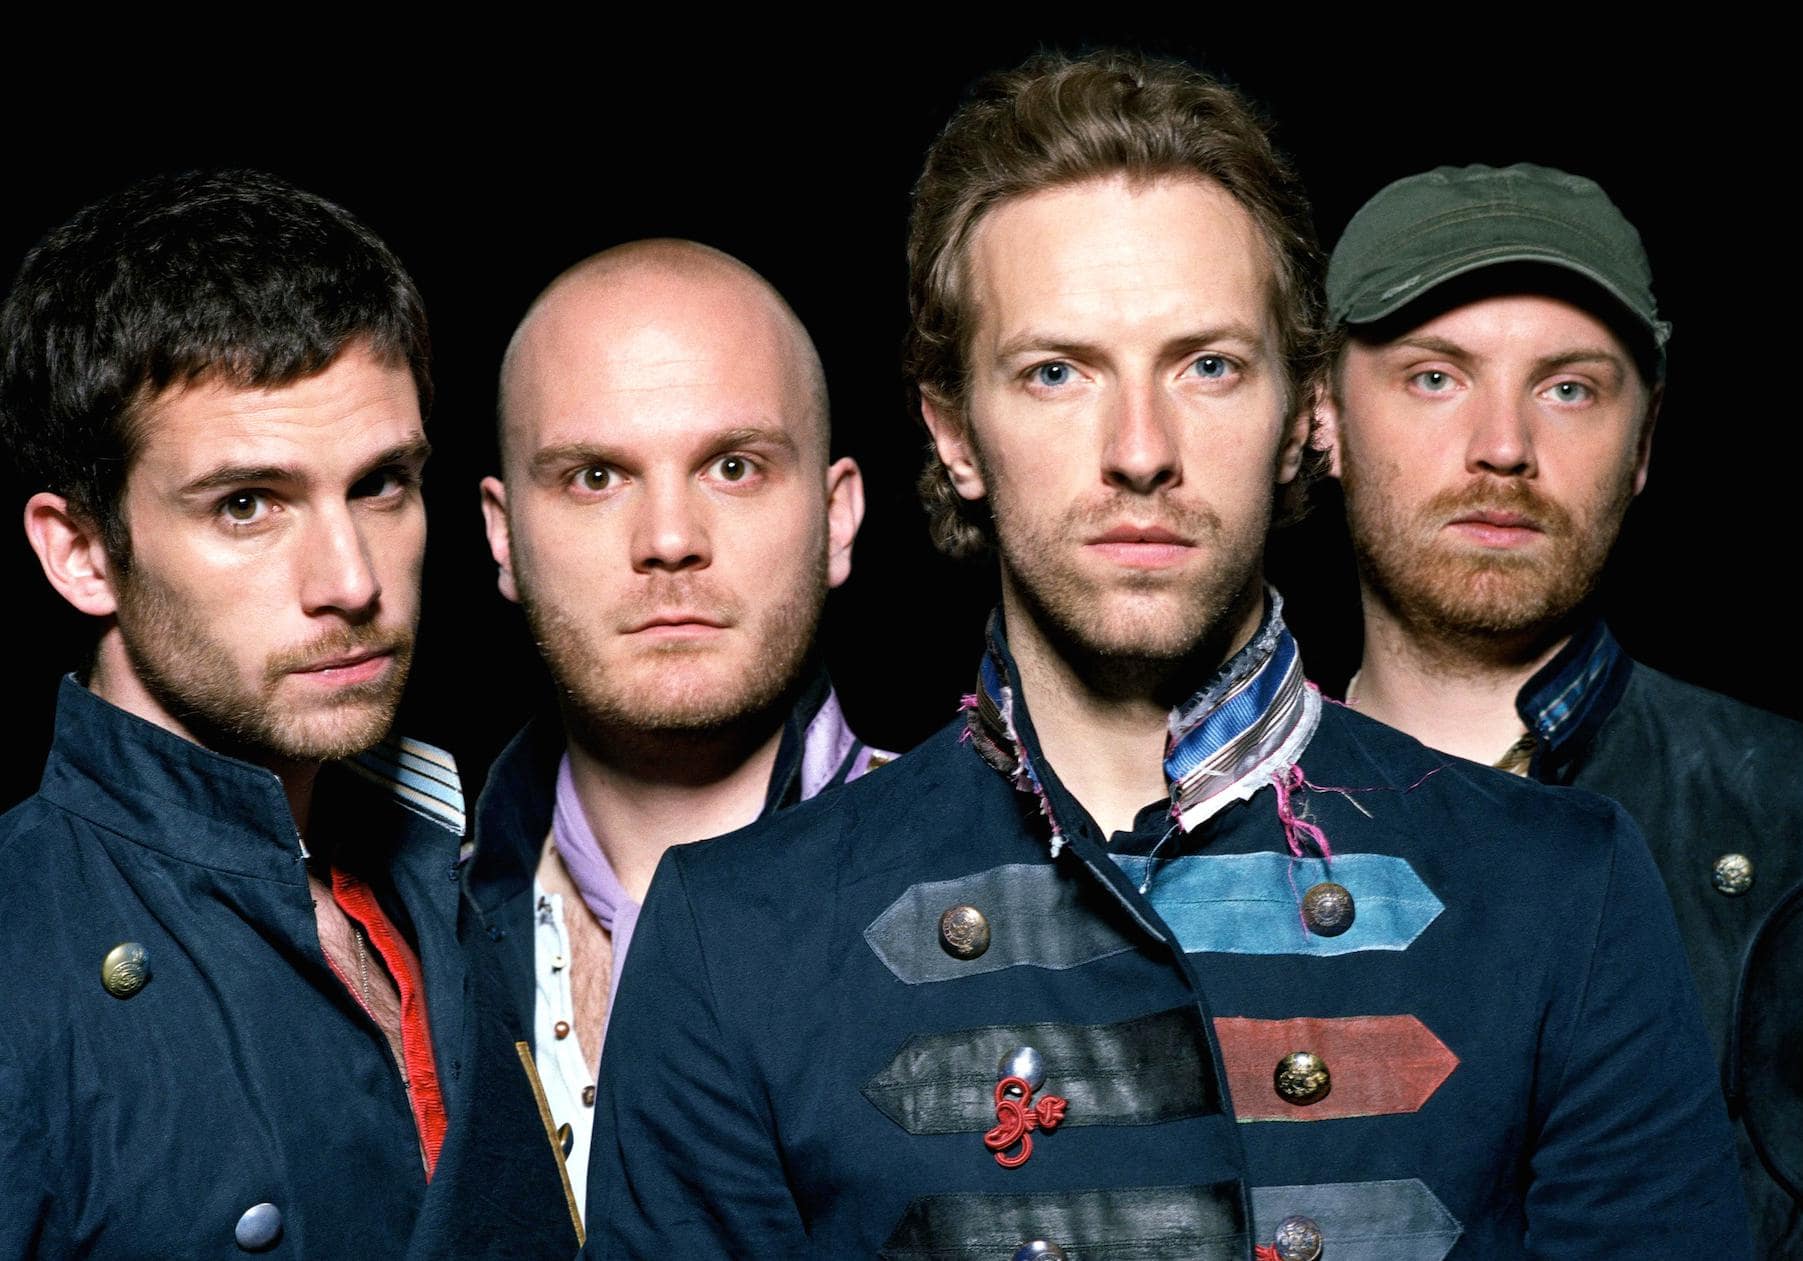 Découvrez notre classement des meilleures chansons de Coldplay